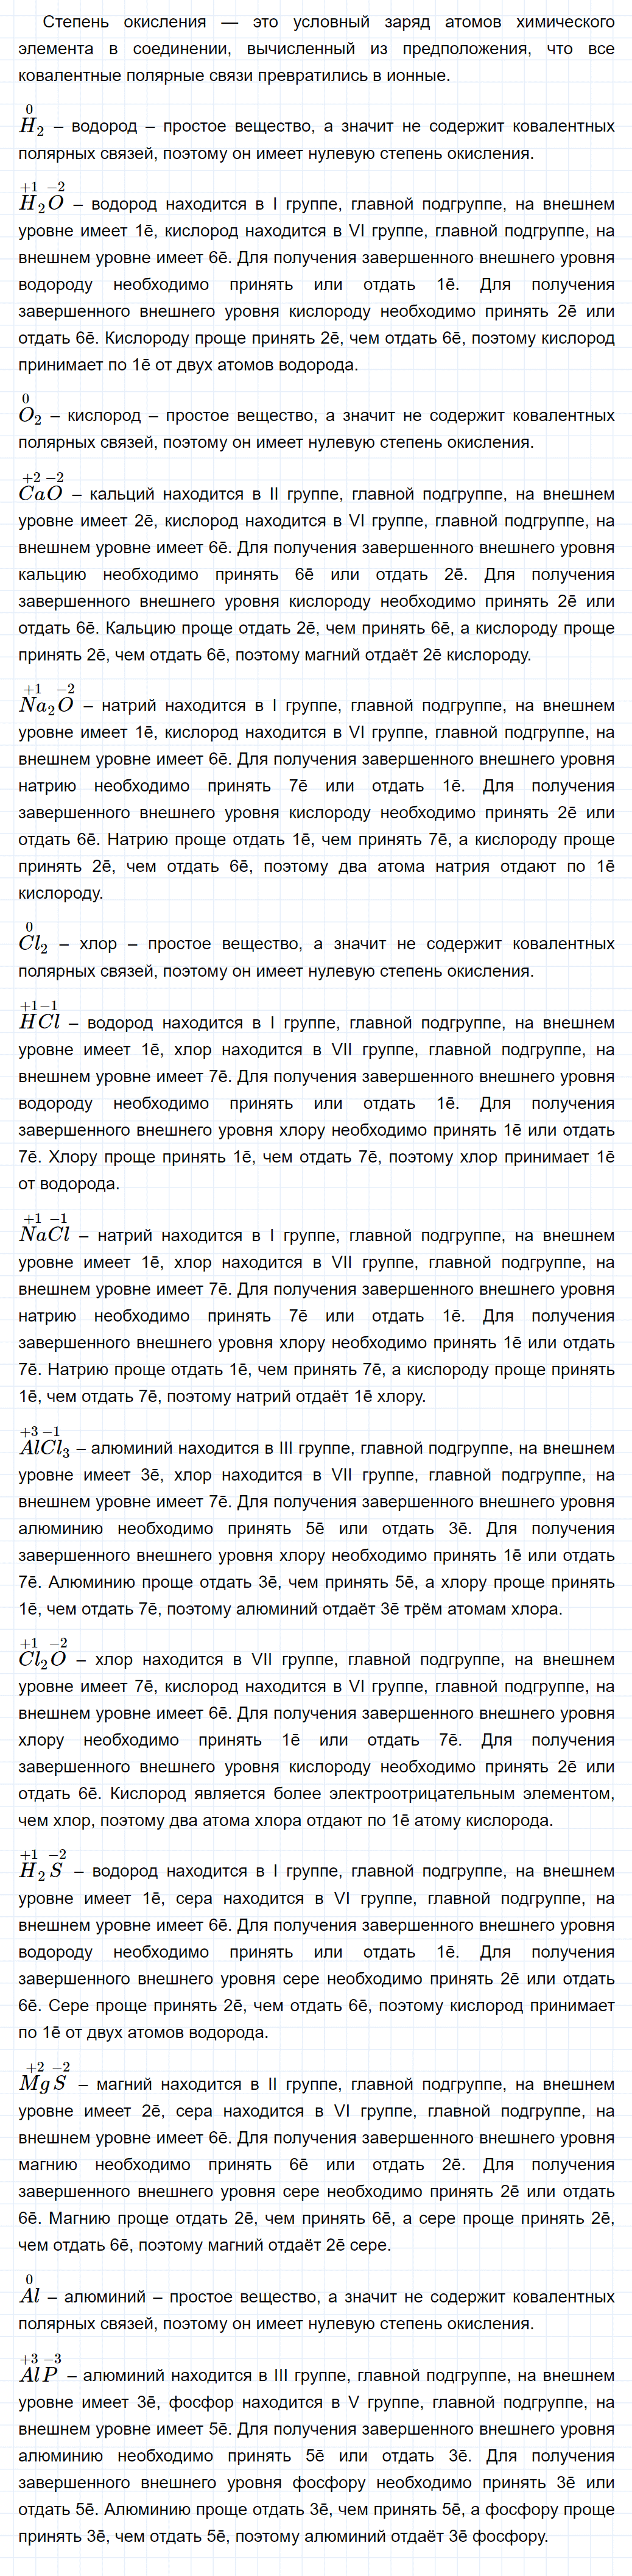 гдз 9 класс параграф 15 номер 2 химия Еремин, Кузьменко